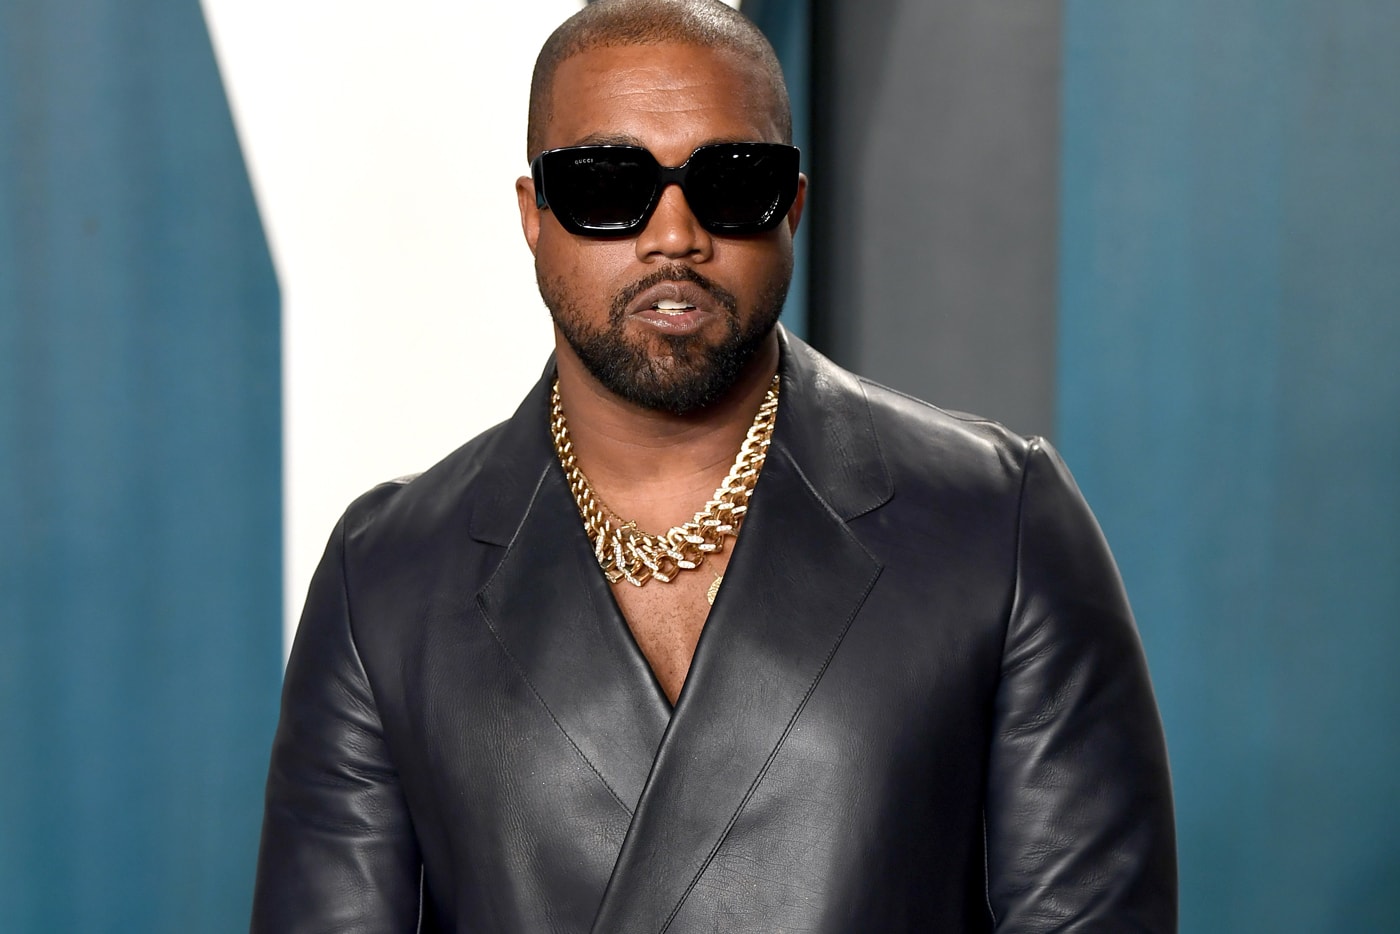 カニエ・ウエスト Kanye West の2002年〜2020年までのインタビューを網羅したアーカイブが公開 Kanye West Full Interview List 2002-2020 Watch DJ Whoo Kid RadioPlanetTV Oprah Winfrey Sway In the Morning Charlamagne Tha God Breakfast Club